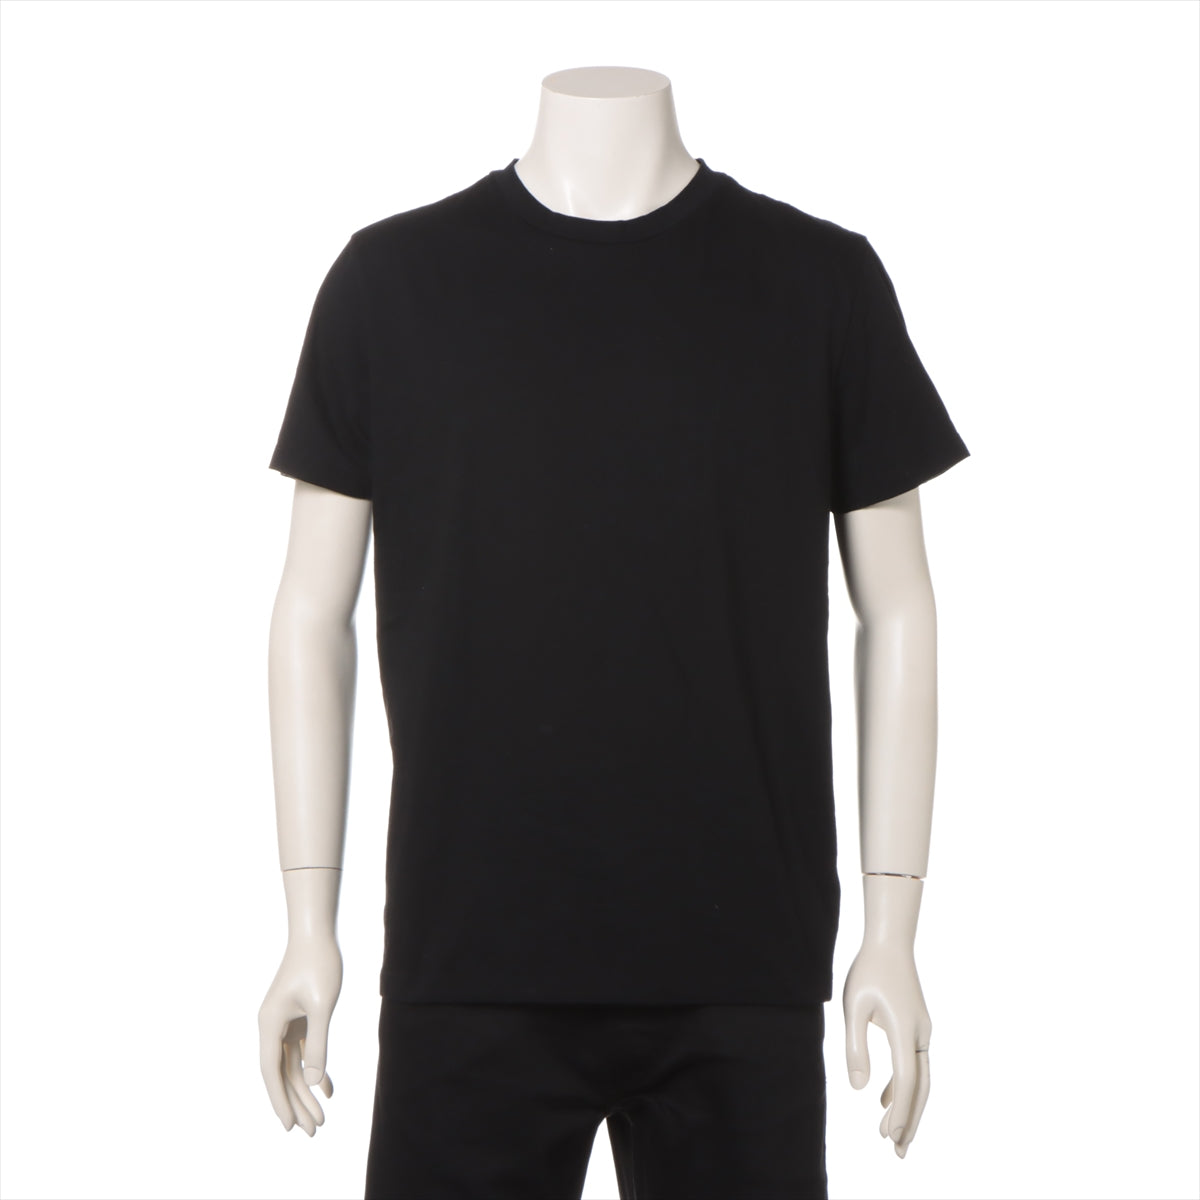 モンクレール 22年 コットン Tシャツ L メンズ ブラック  I209P8C00002